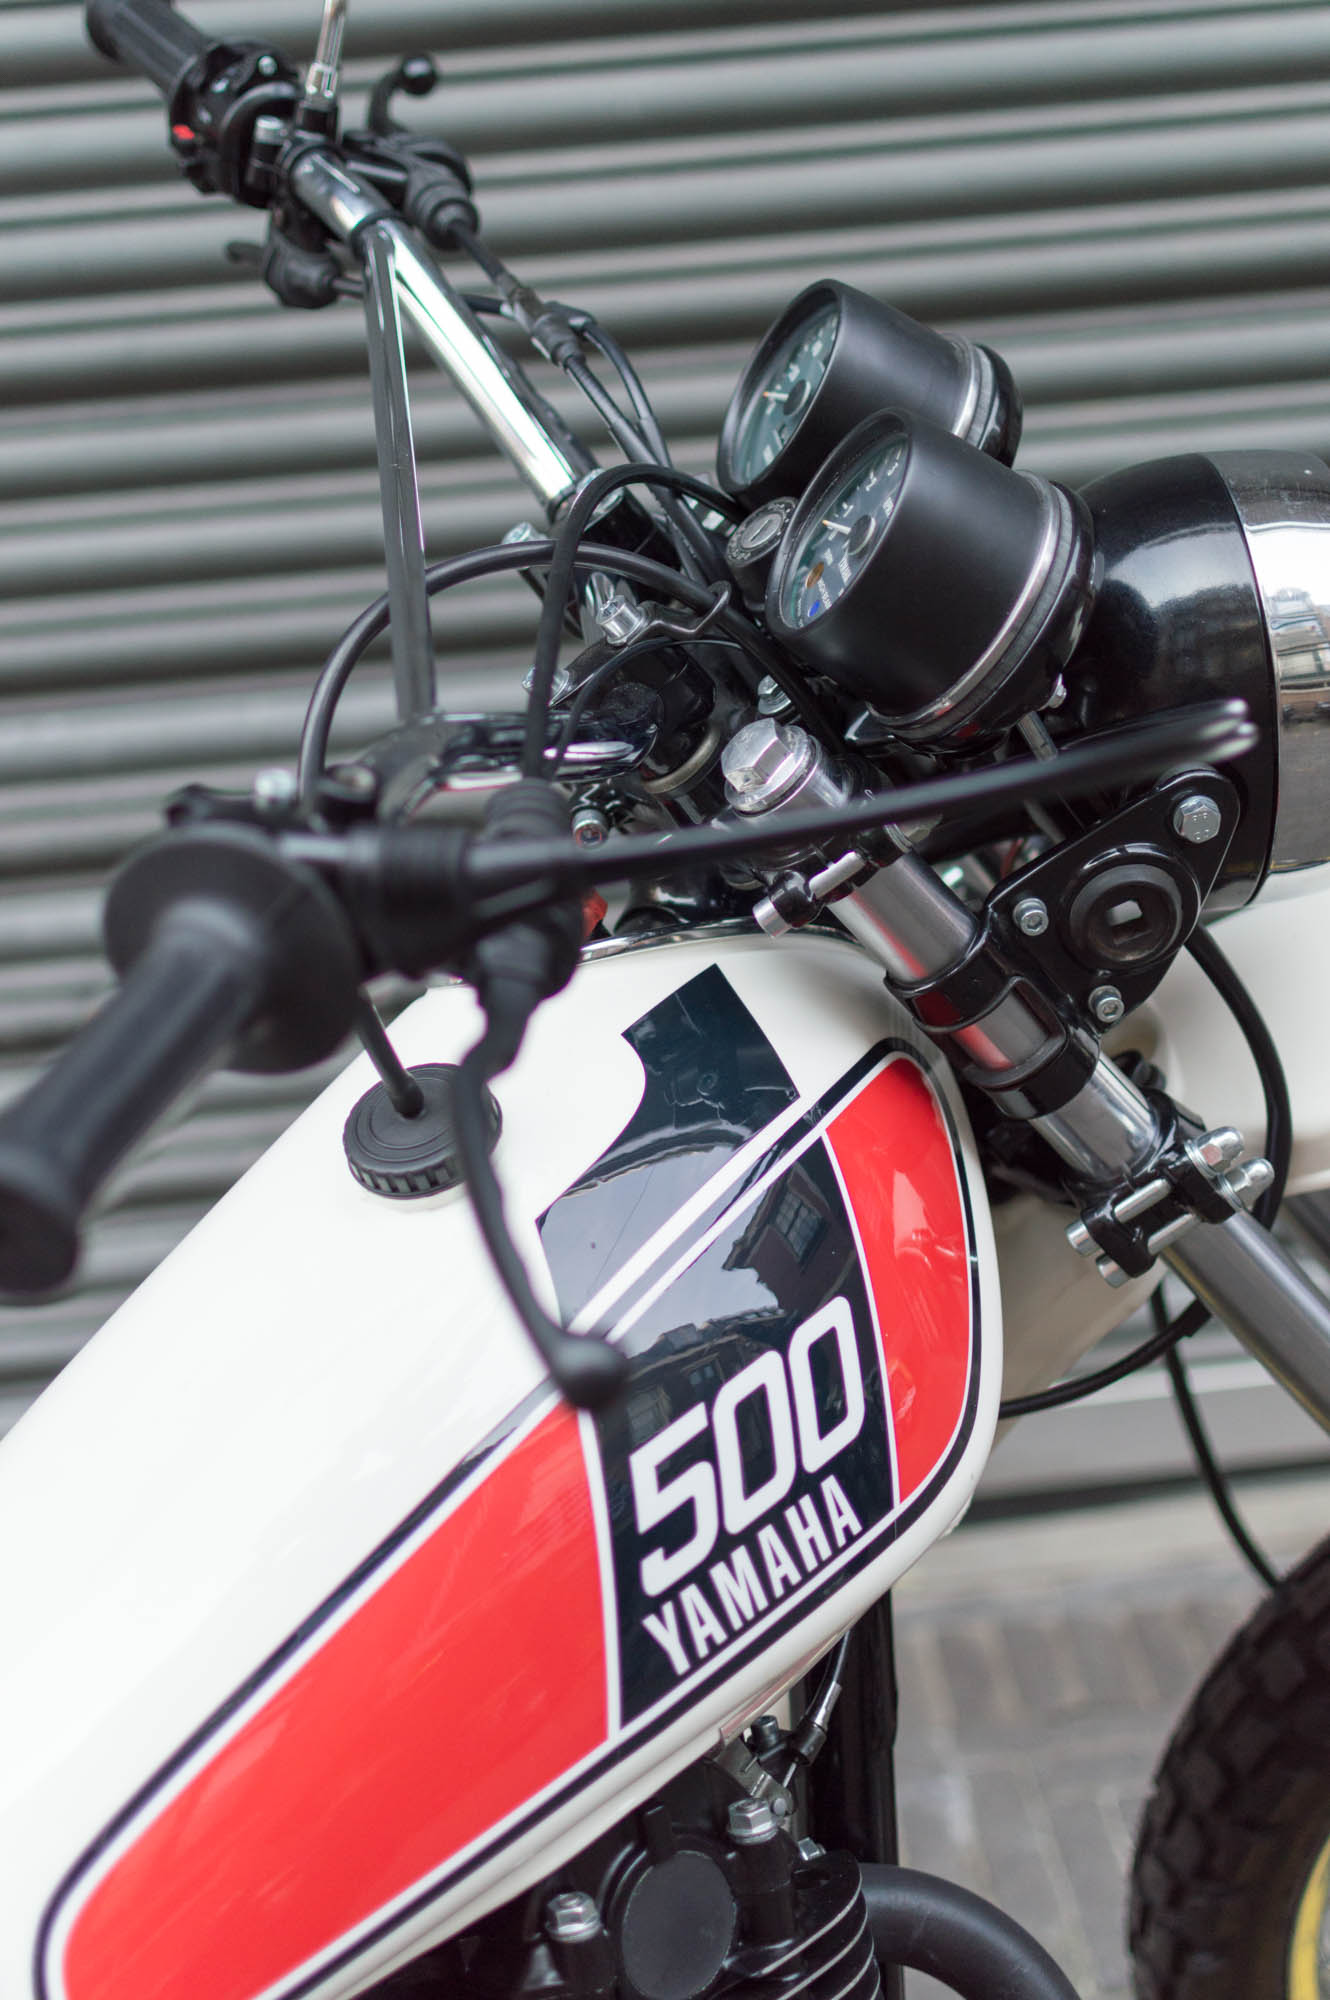 Ombouw Yamaha XT500 by Wang Motoren Den Haag